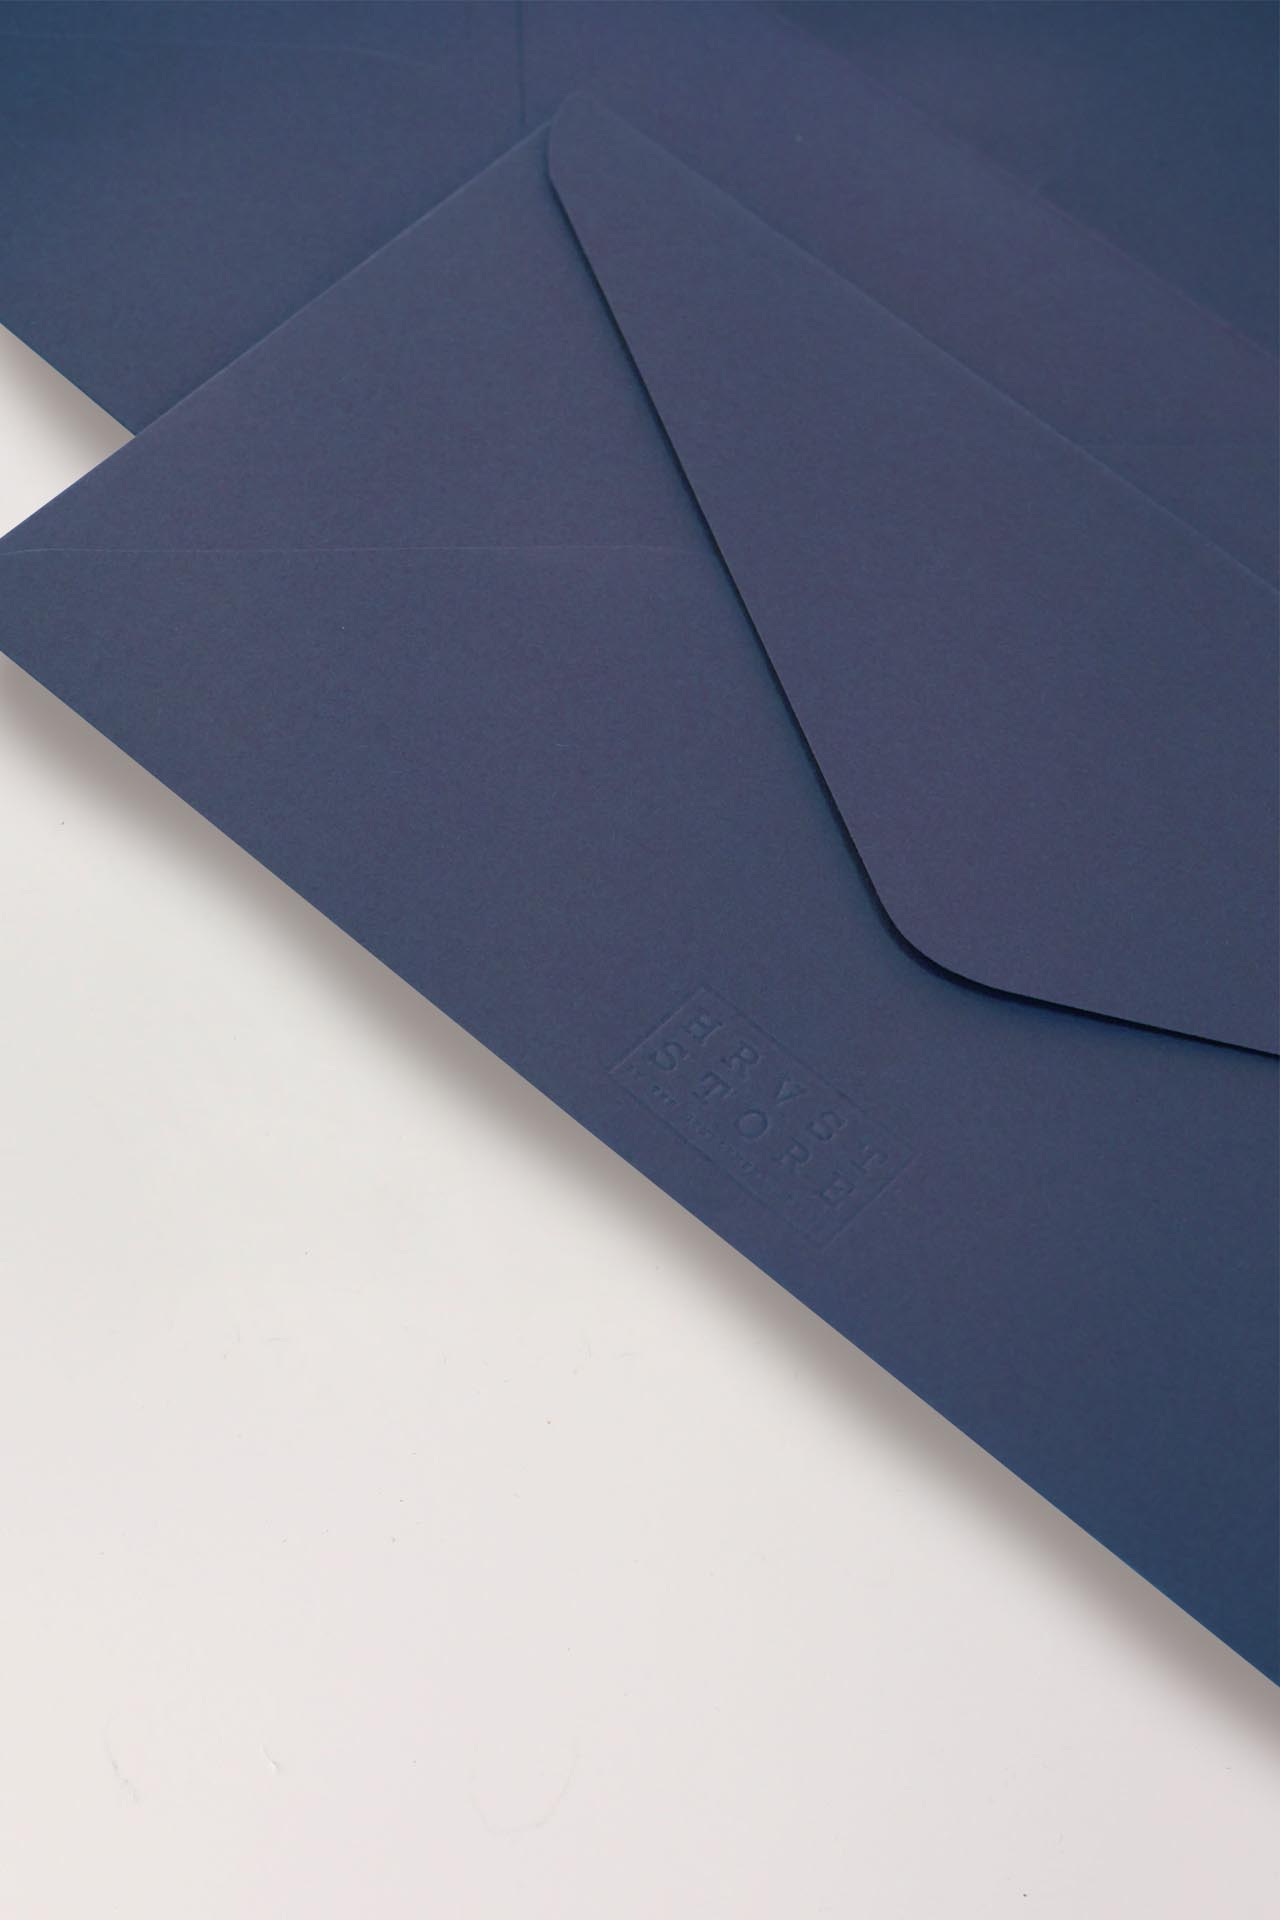 DL Cobalt Blue Envelopes